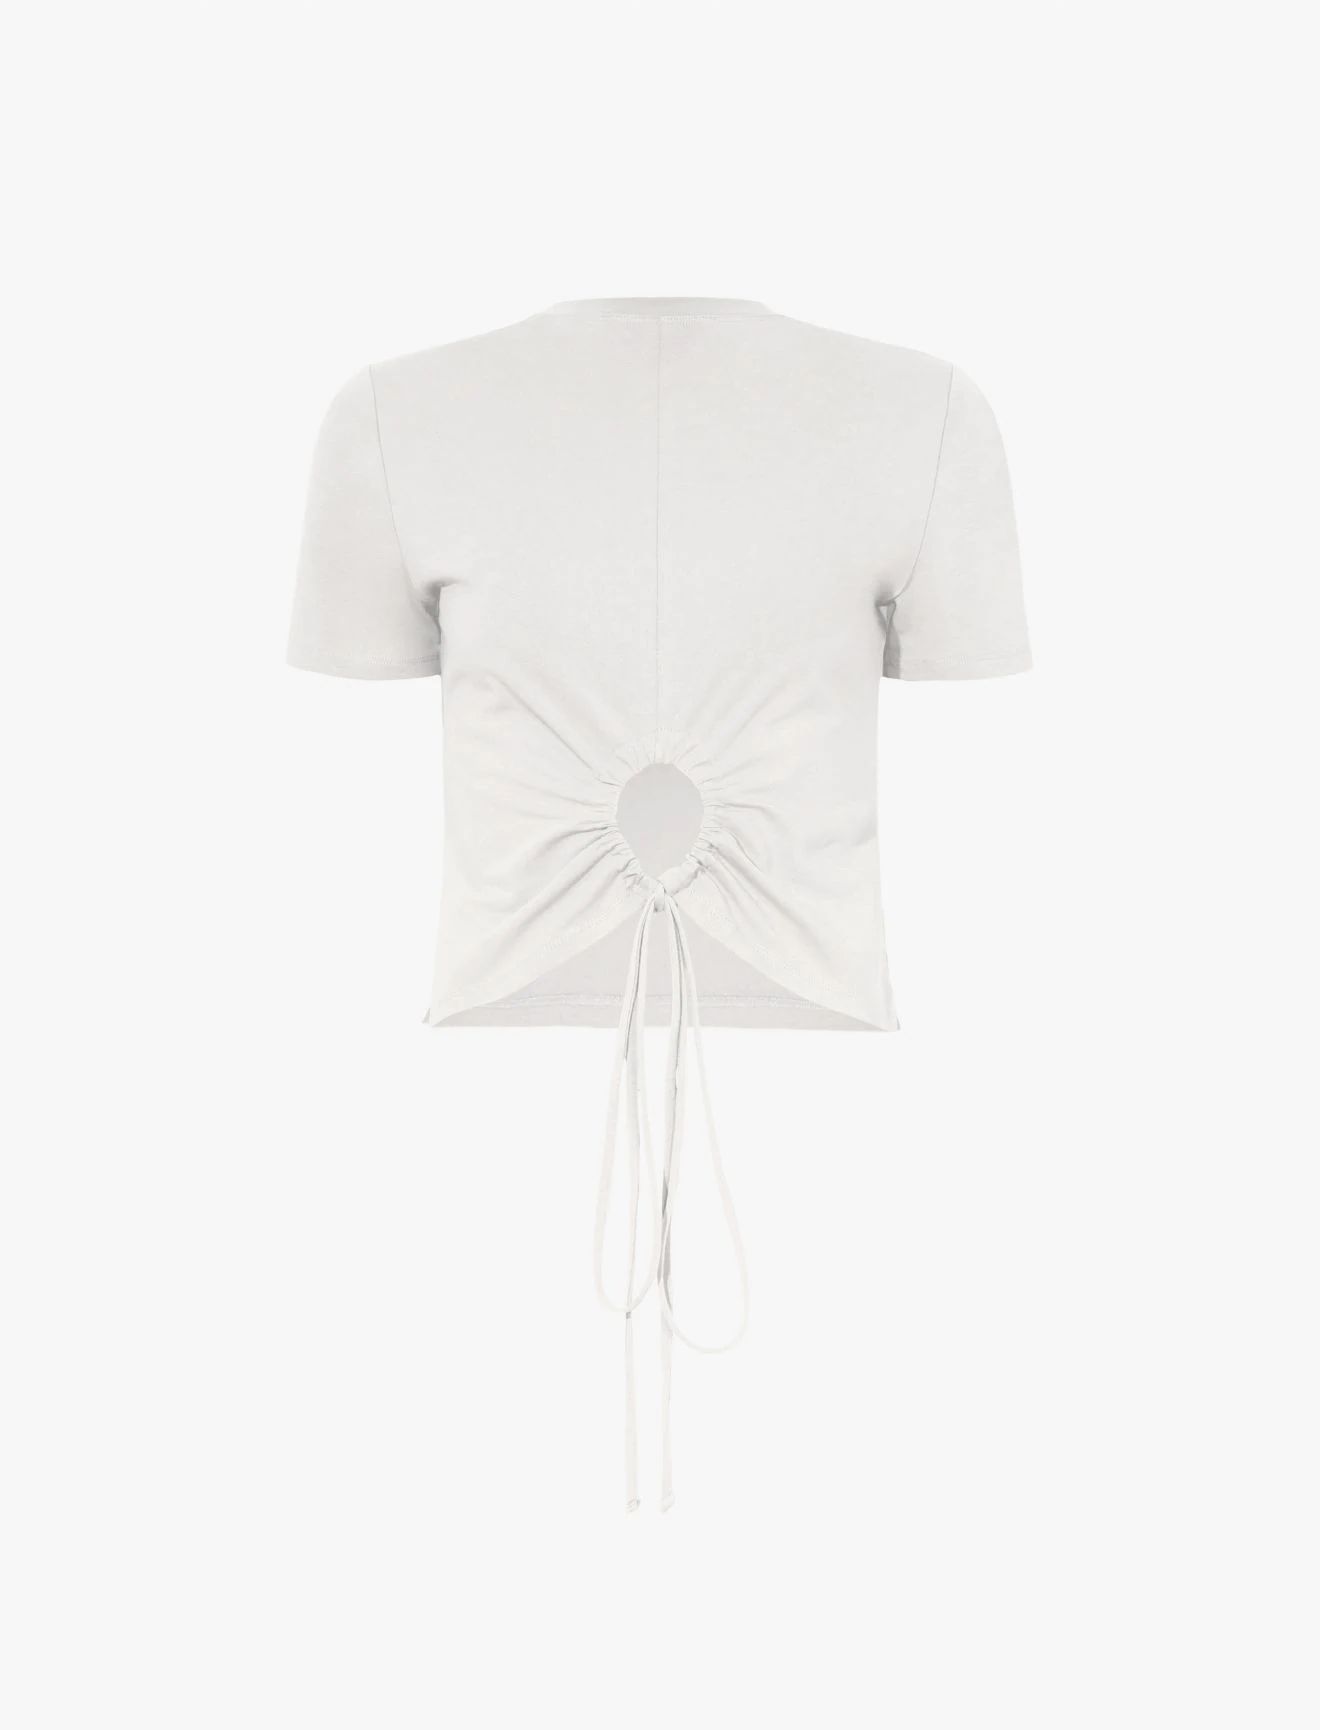 Reversible Keyhole T-Shirt in off white | Proenza Schouler | Proenza Schouler LLC